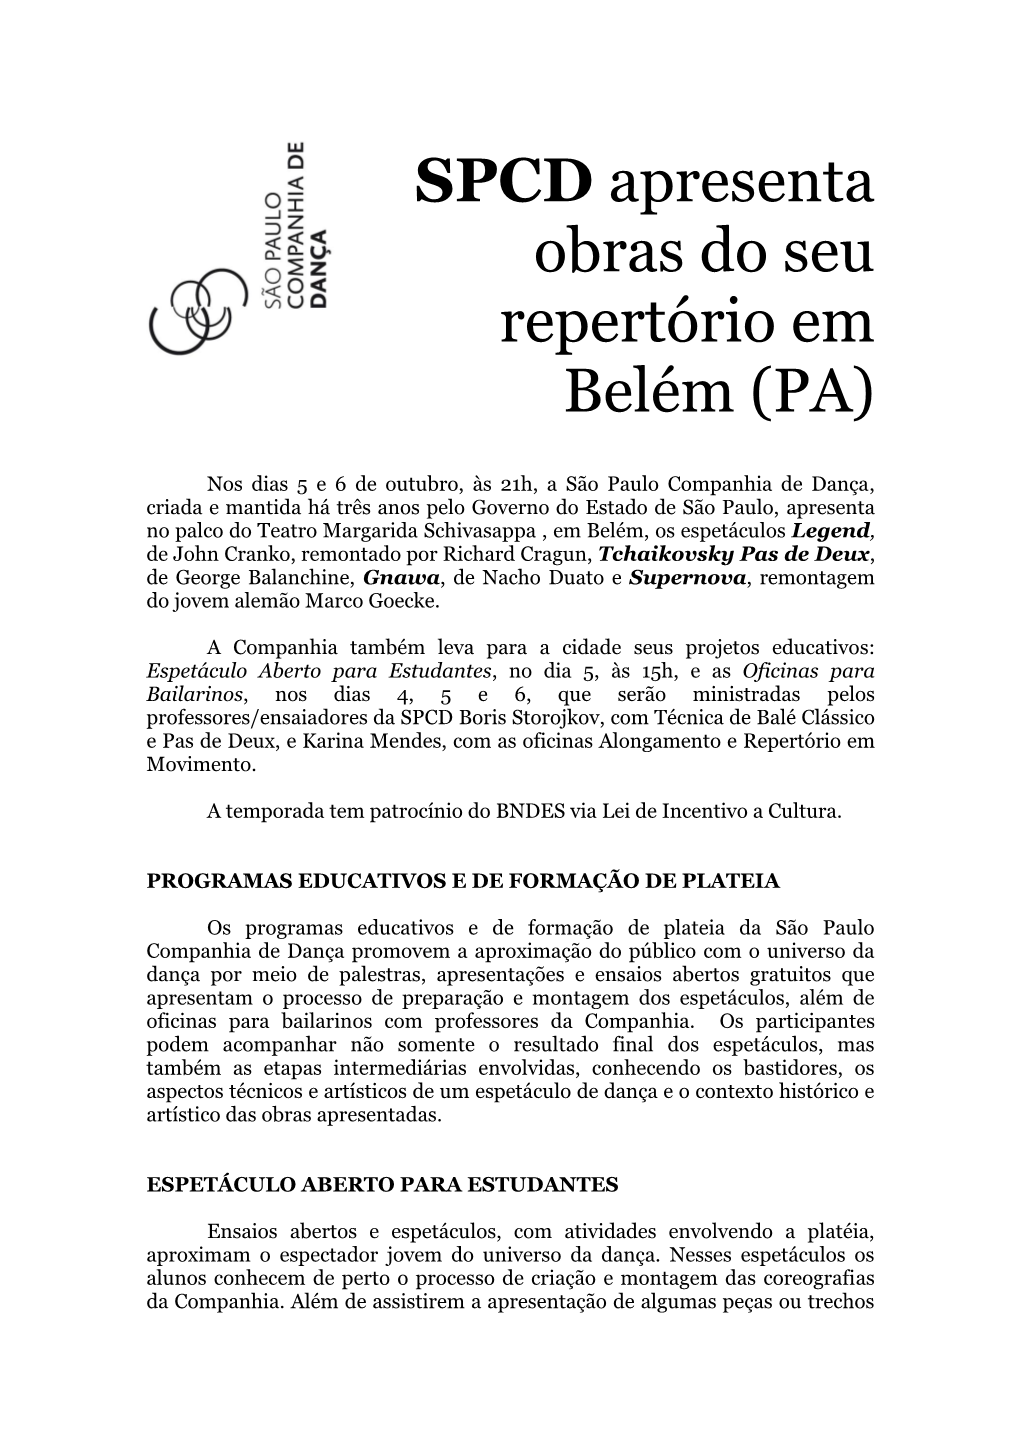 SPCD Apresenta Obras Do Seu Repertório Em Belém (PA)